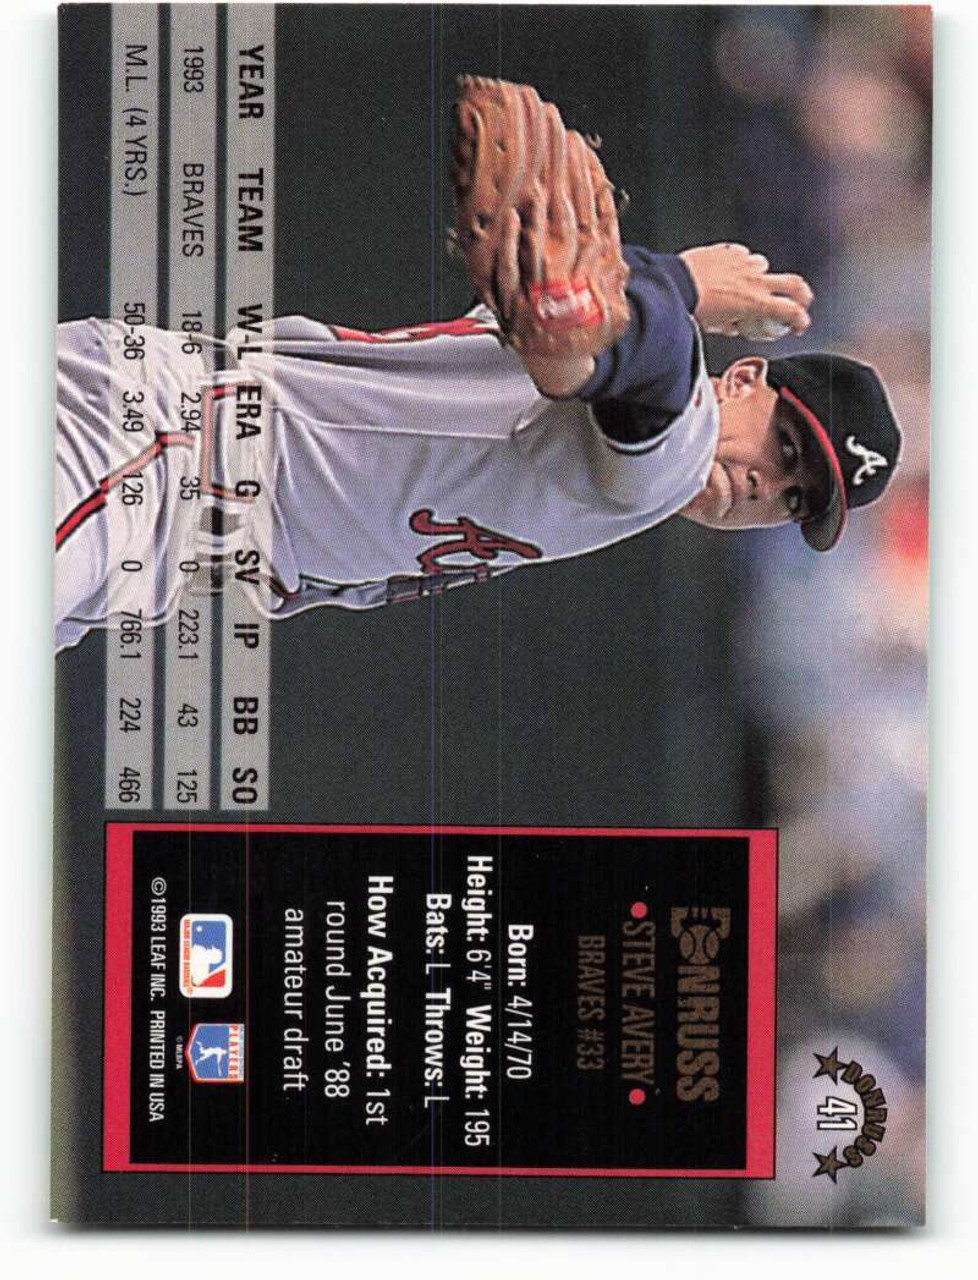 Steve Avery Signed 1993 Leaf Baseball Card - Atlanta Braves